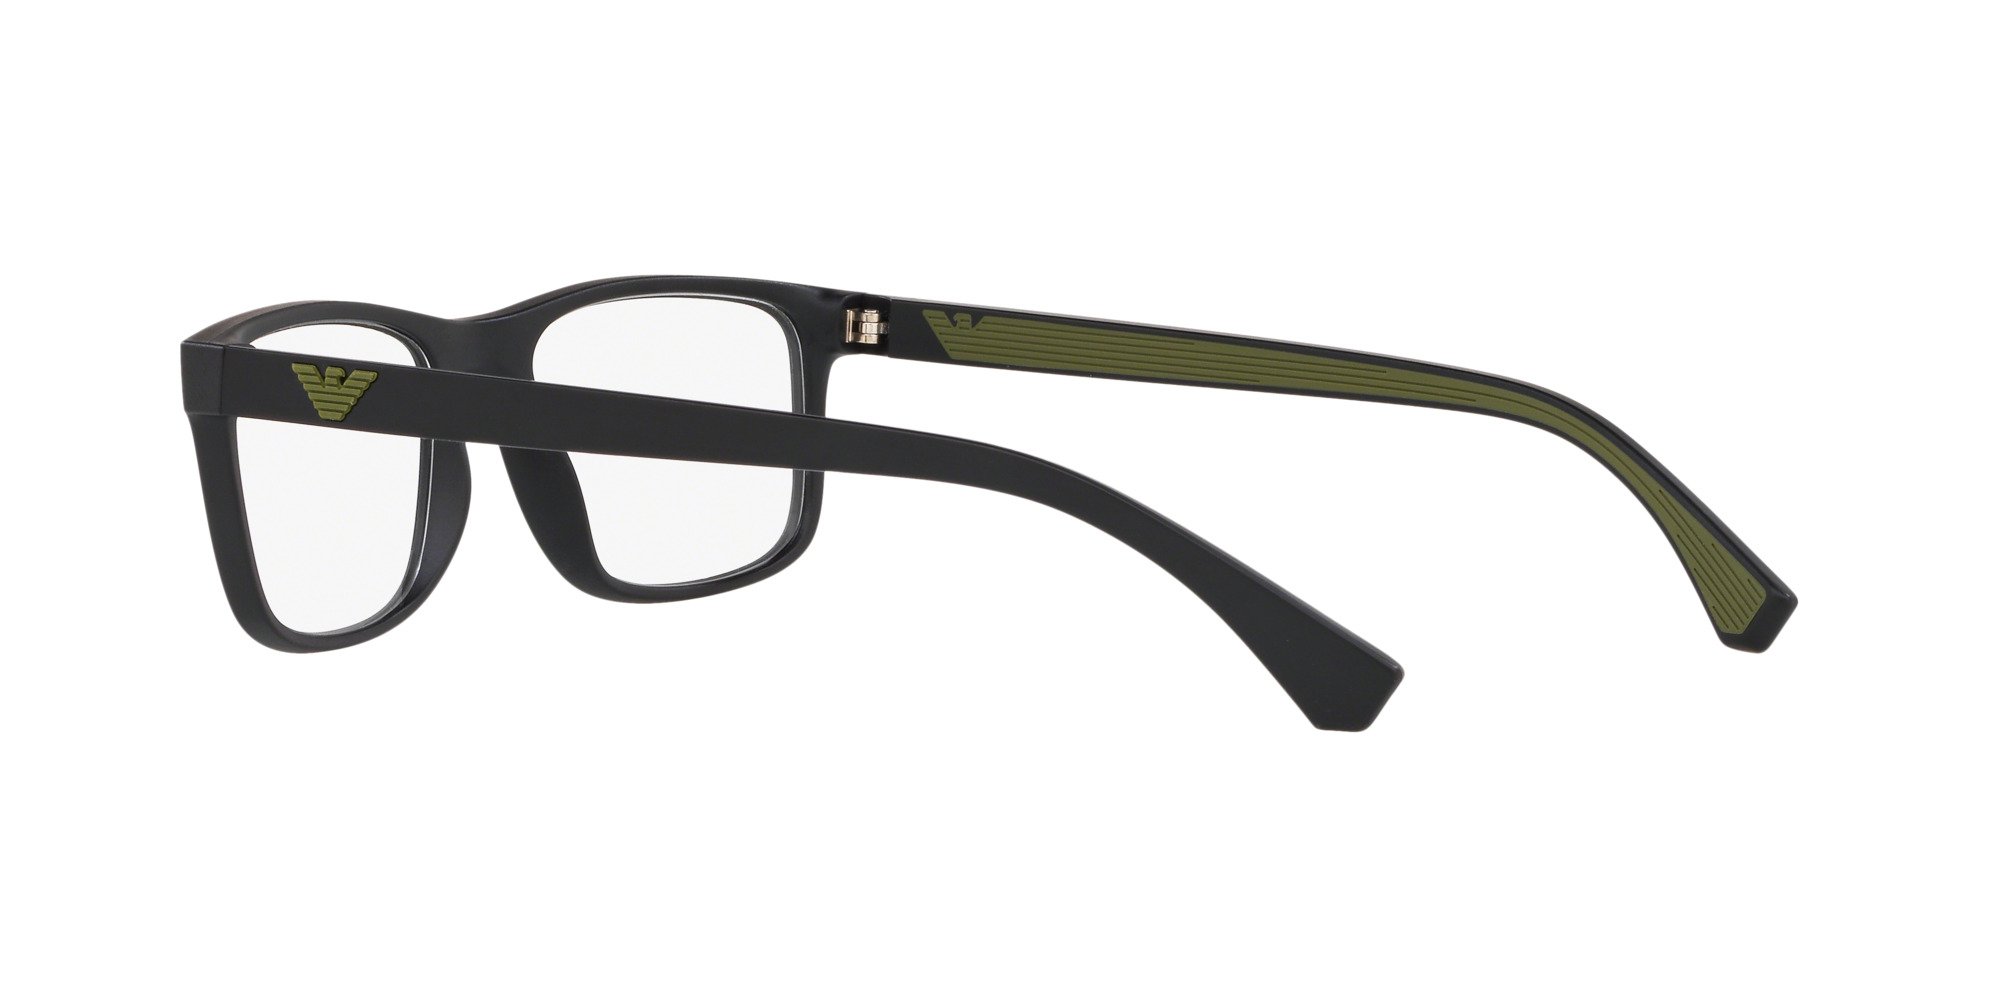 Das Bild zeigt die Korrektionsbrille EA3147 5042 von der Marke Emporio Armani in Schwarz.